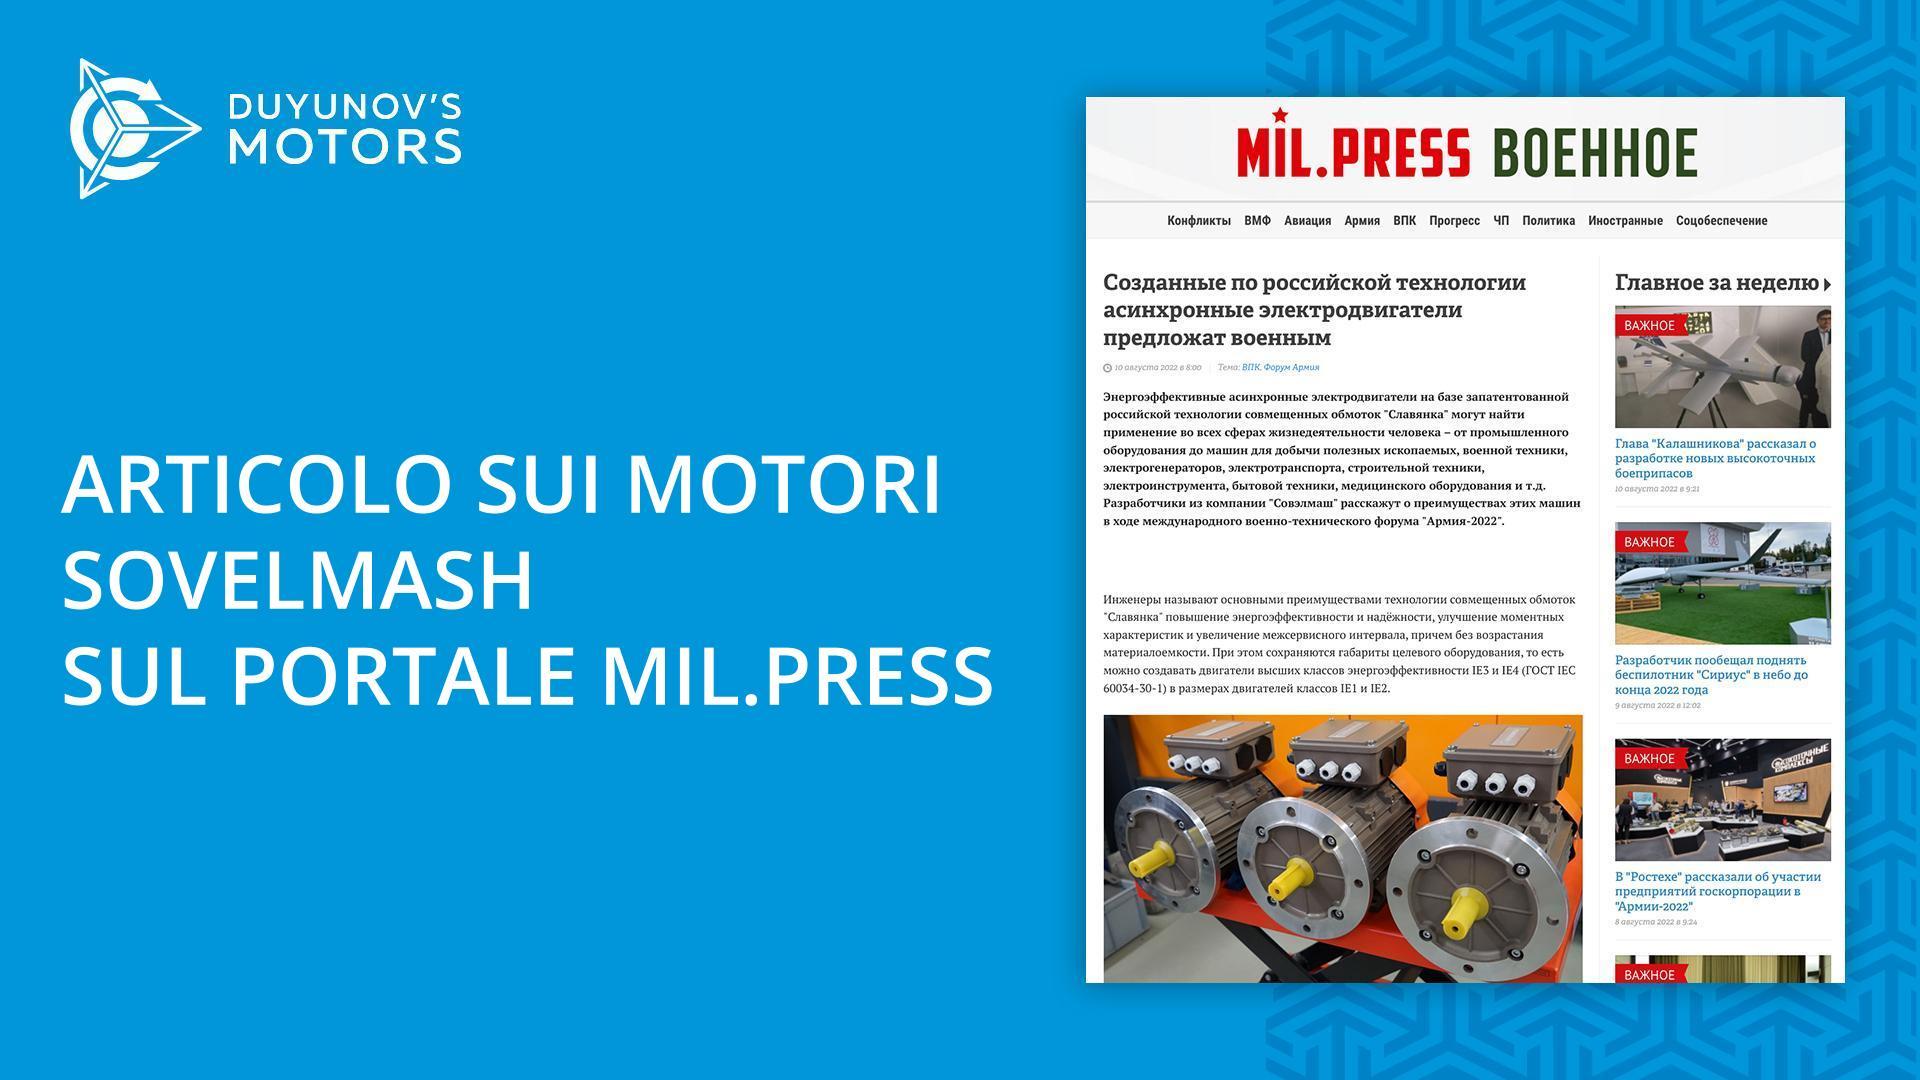 Nuova pubblicazione sui motori Sovelmash presso l'agenzia di stampa militare Mil.Press